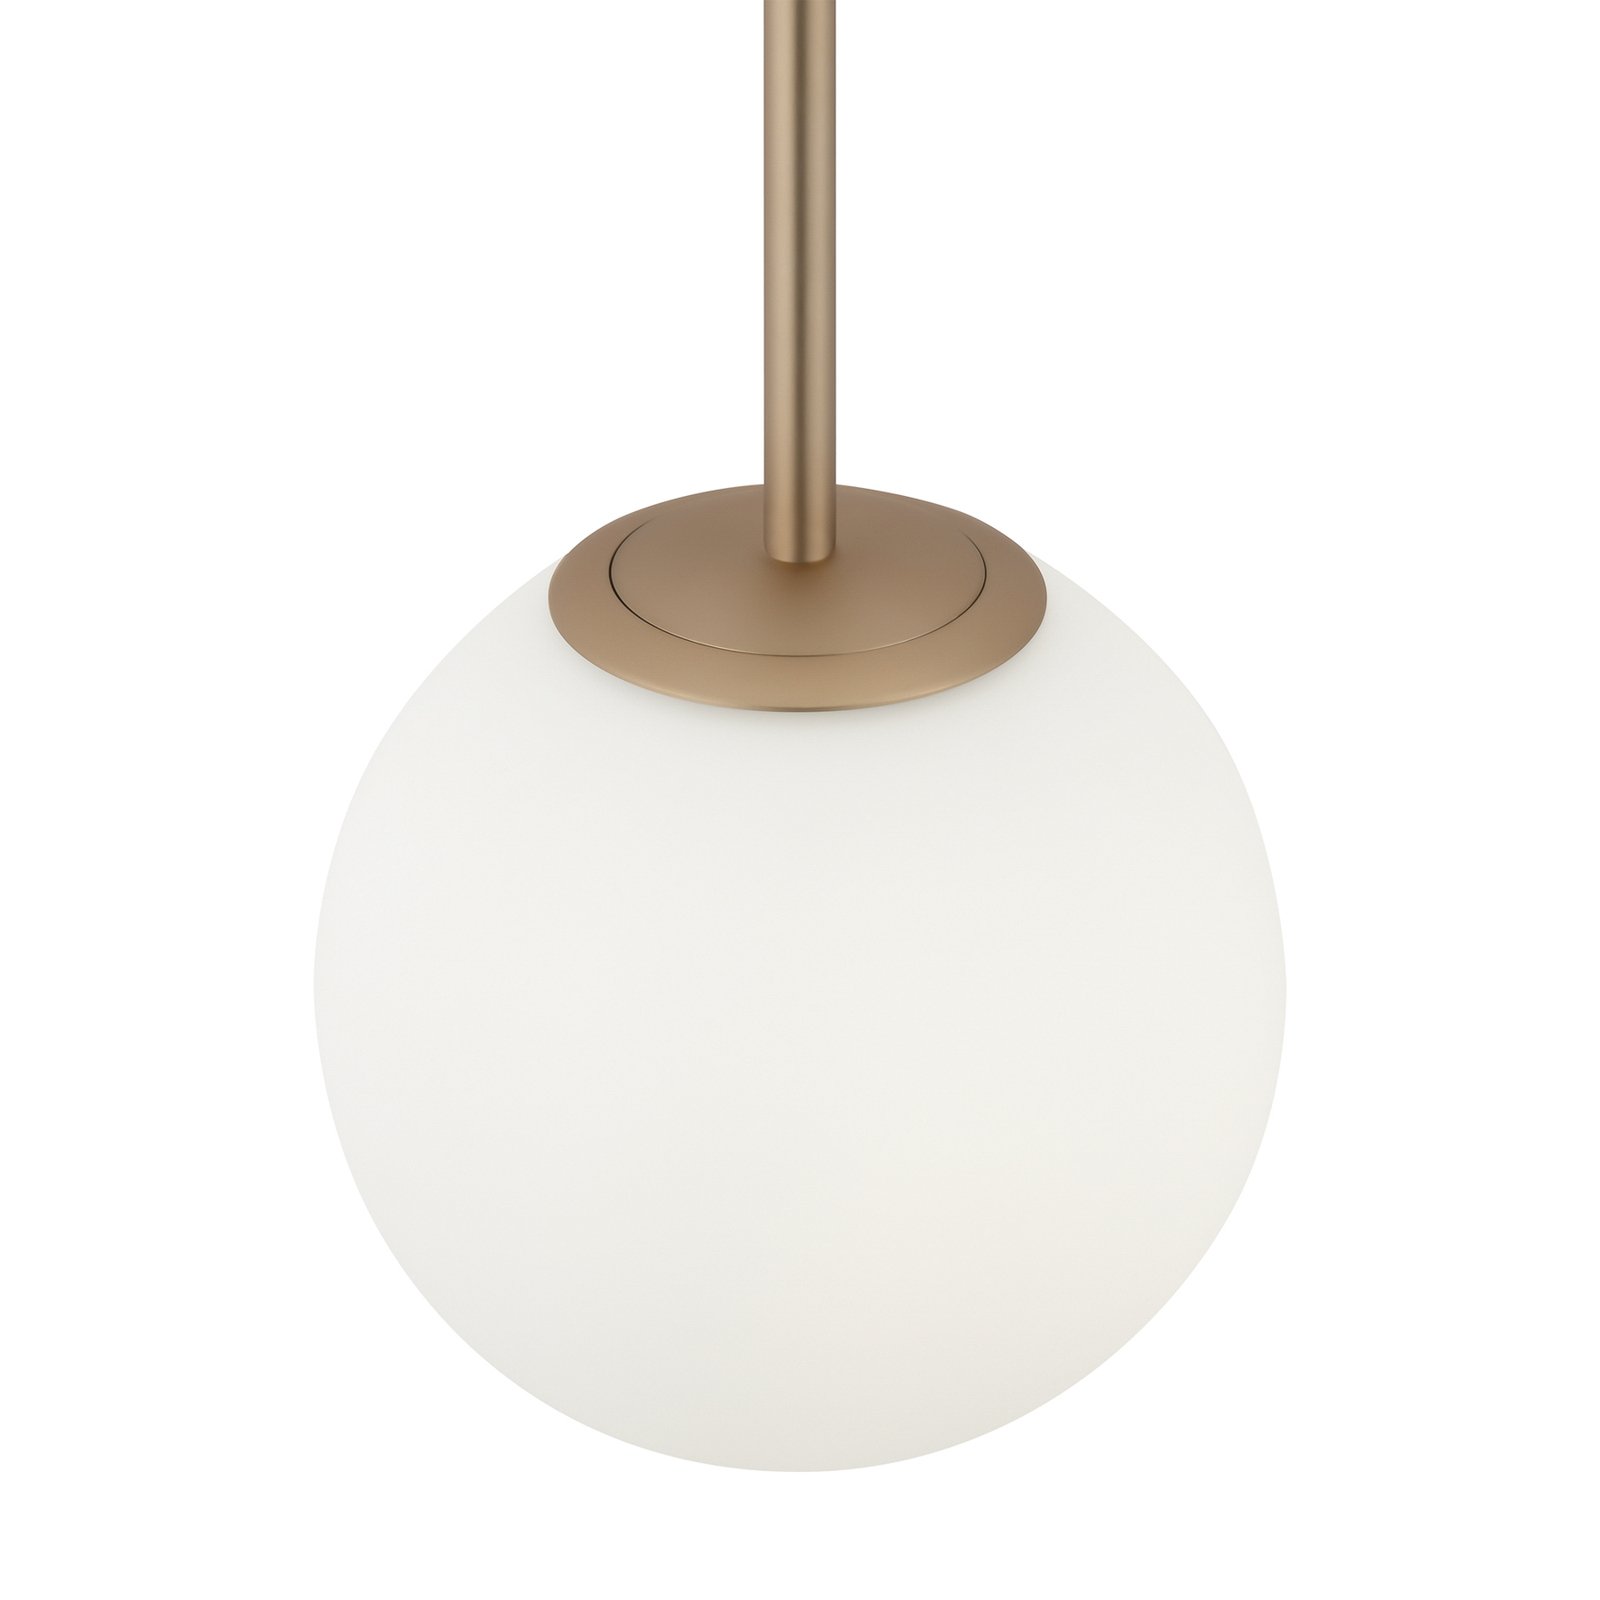 Maytoni Basic form pendant light, white/gold, 1-bulb.